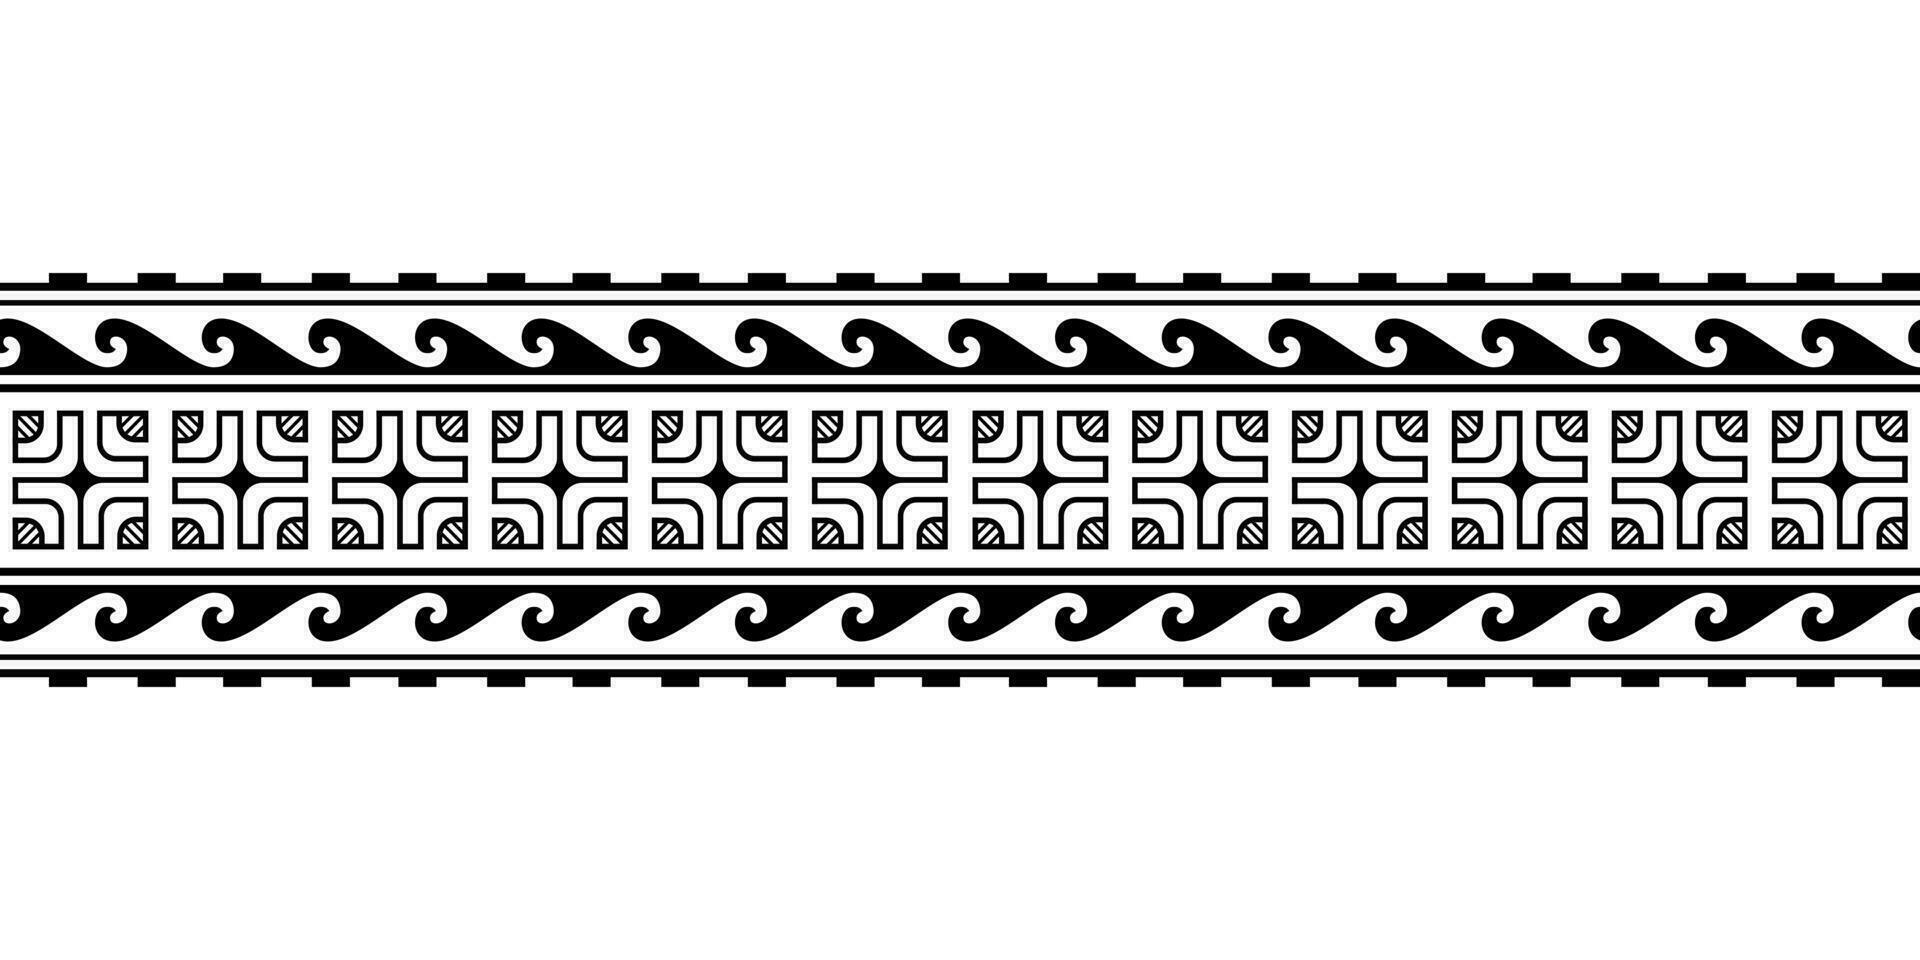 Maori polynesisch tätowieren Armband. Stammes- Ärmel nahtlos Muster Vektor. Samoaner Rand tätowieren Design Vordergrund Arm oder Fuß. Armbinde tätowieren Stamm. Band Stoff nahtlos Ornament isoliert auf Weiß Hintergrund vektor